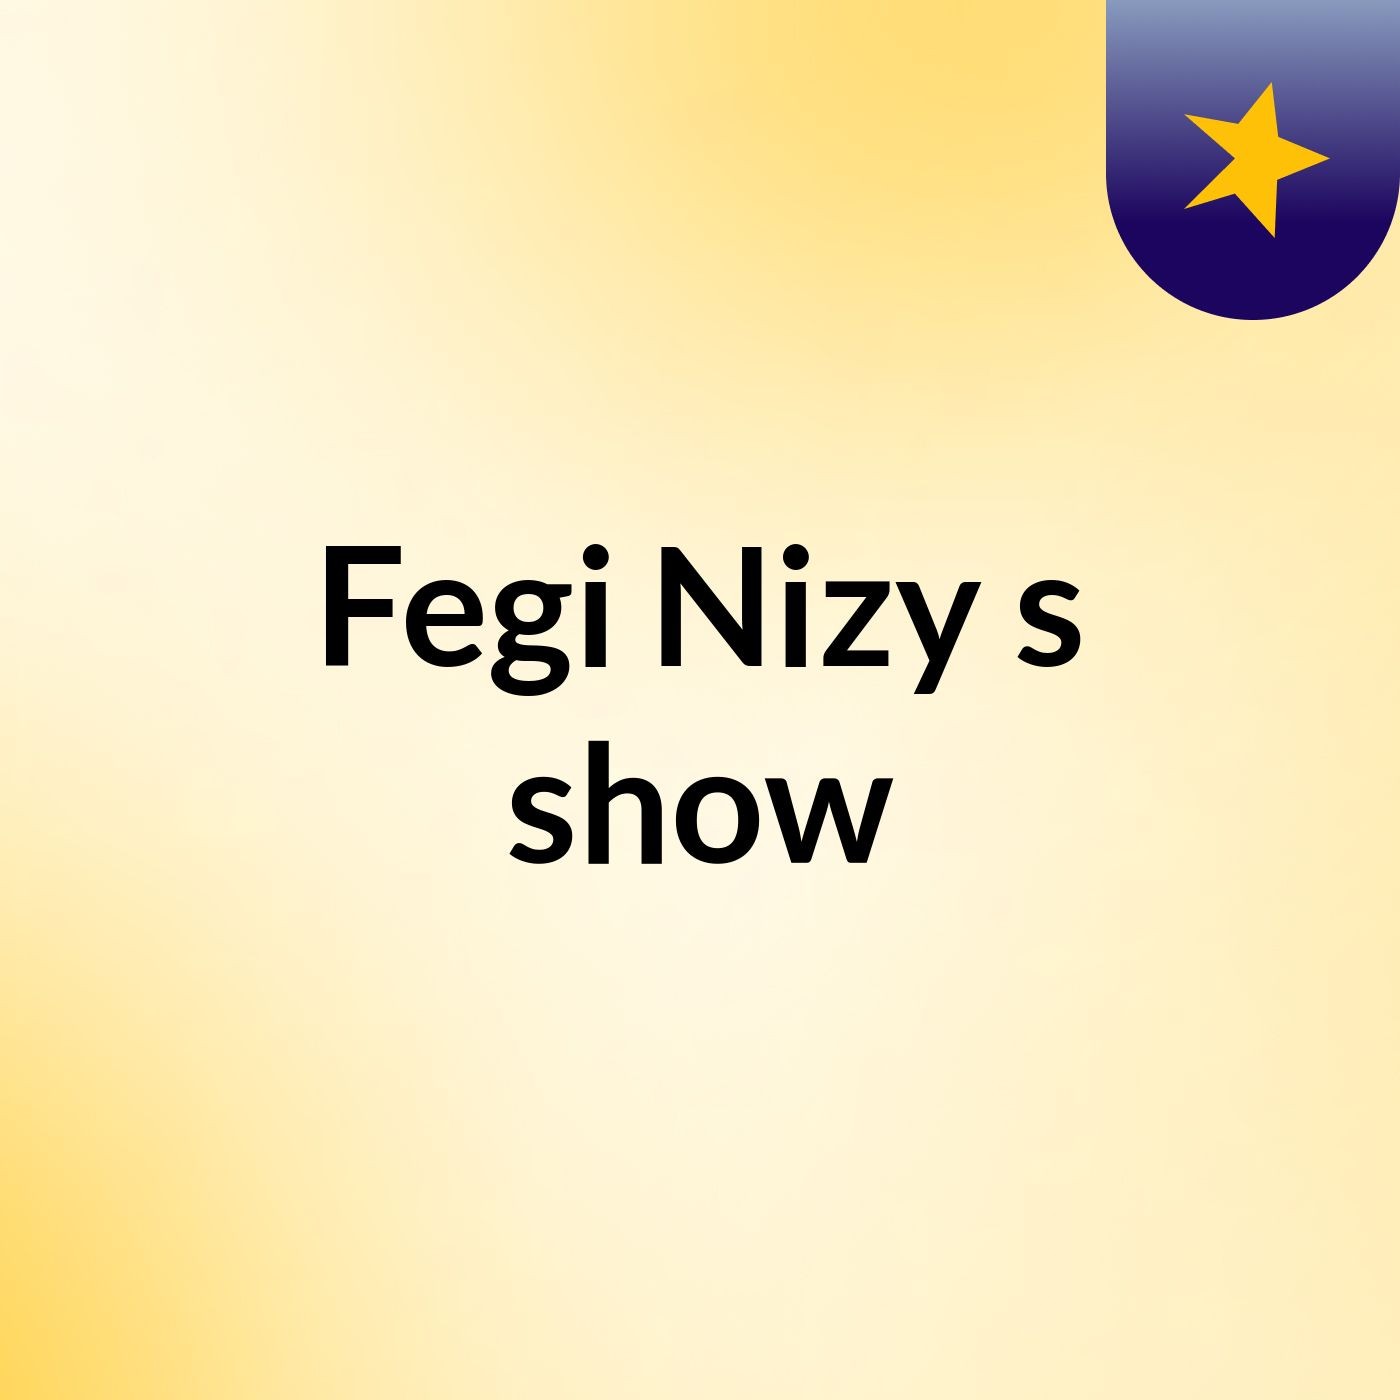 Fegi Nizy's show